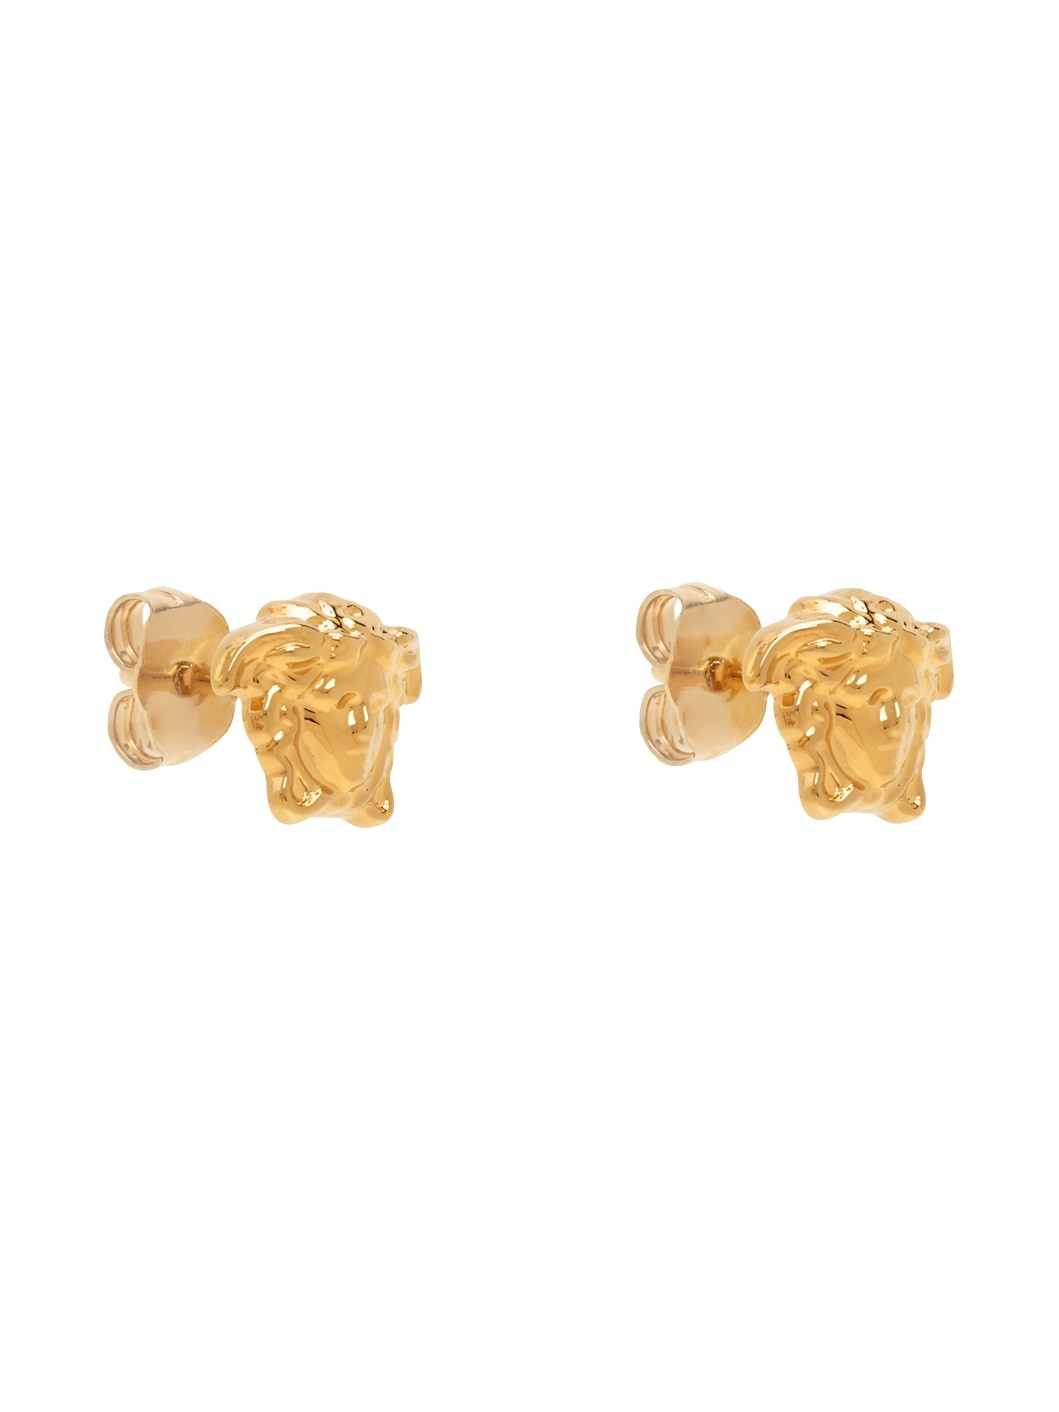 Gold Small Medusa Stud Earrings - 2